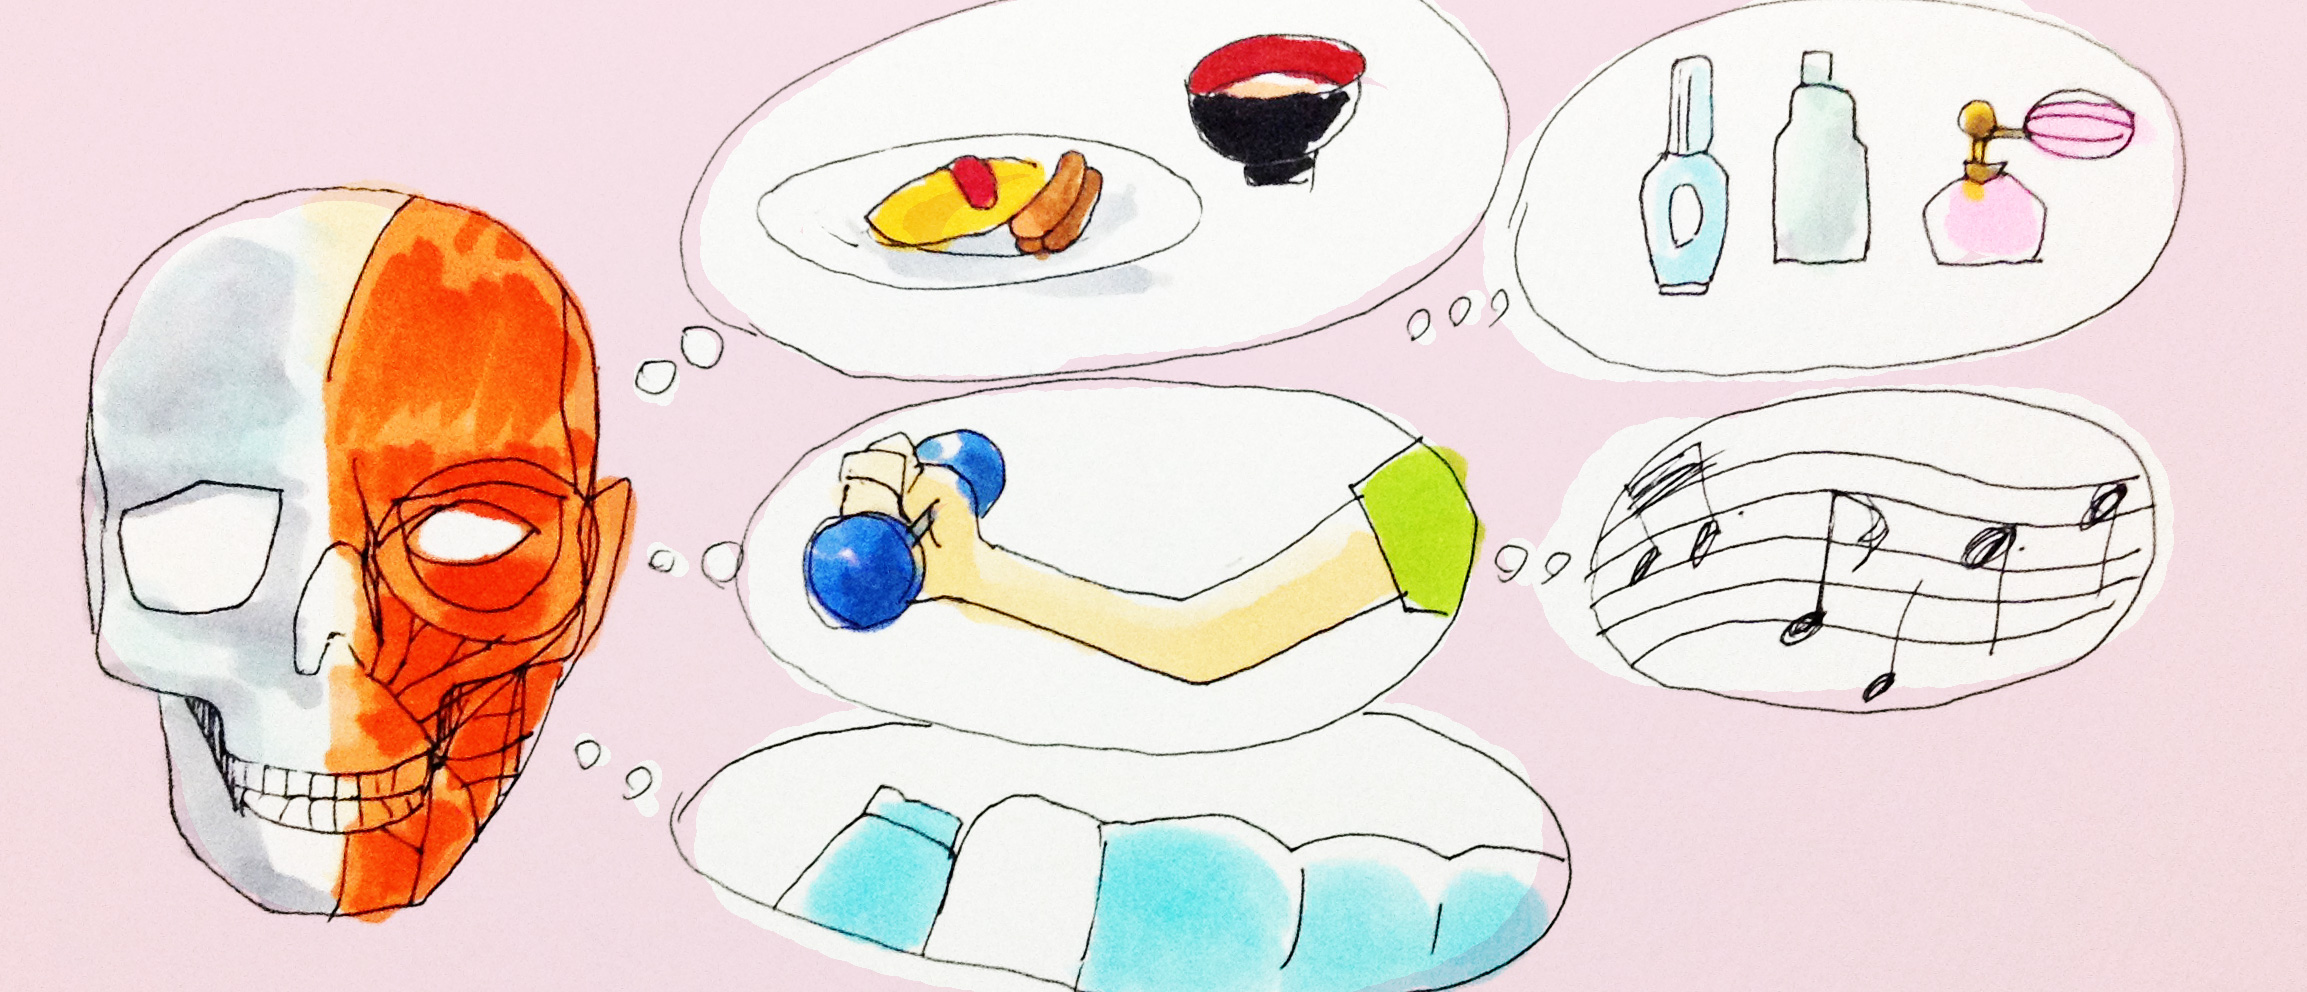 健康に大切な運動や食事、睡眠などのイメージをコピックで描いたイラスト